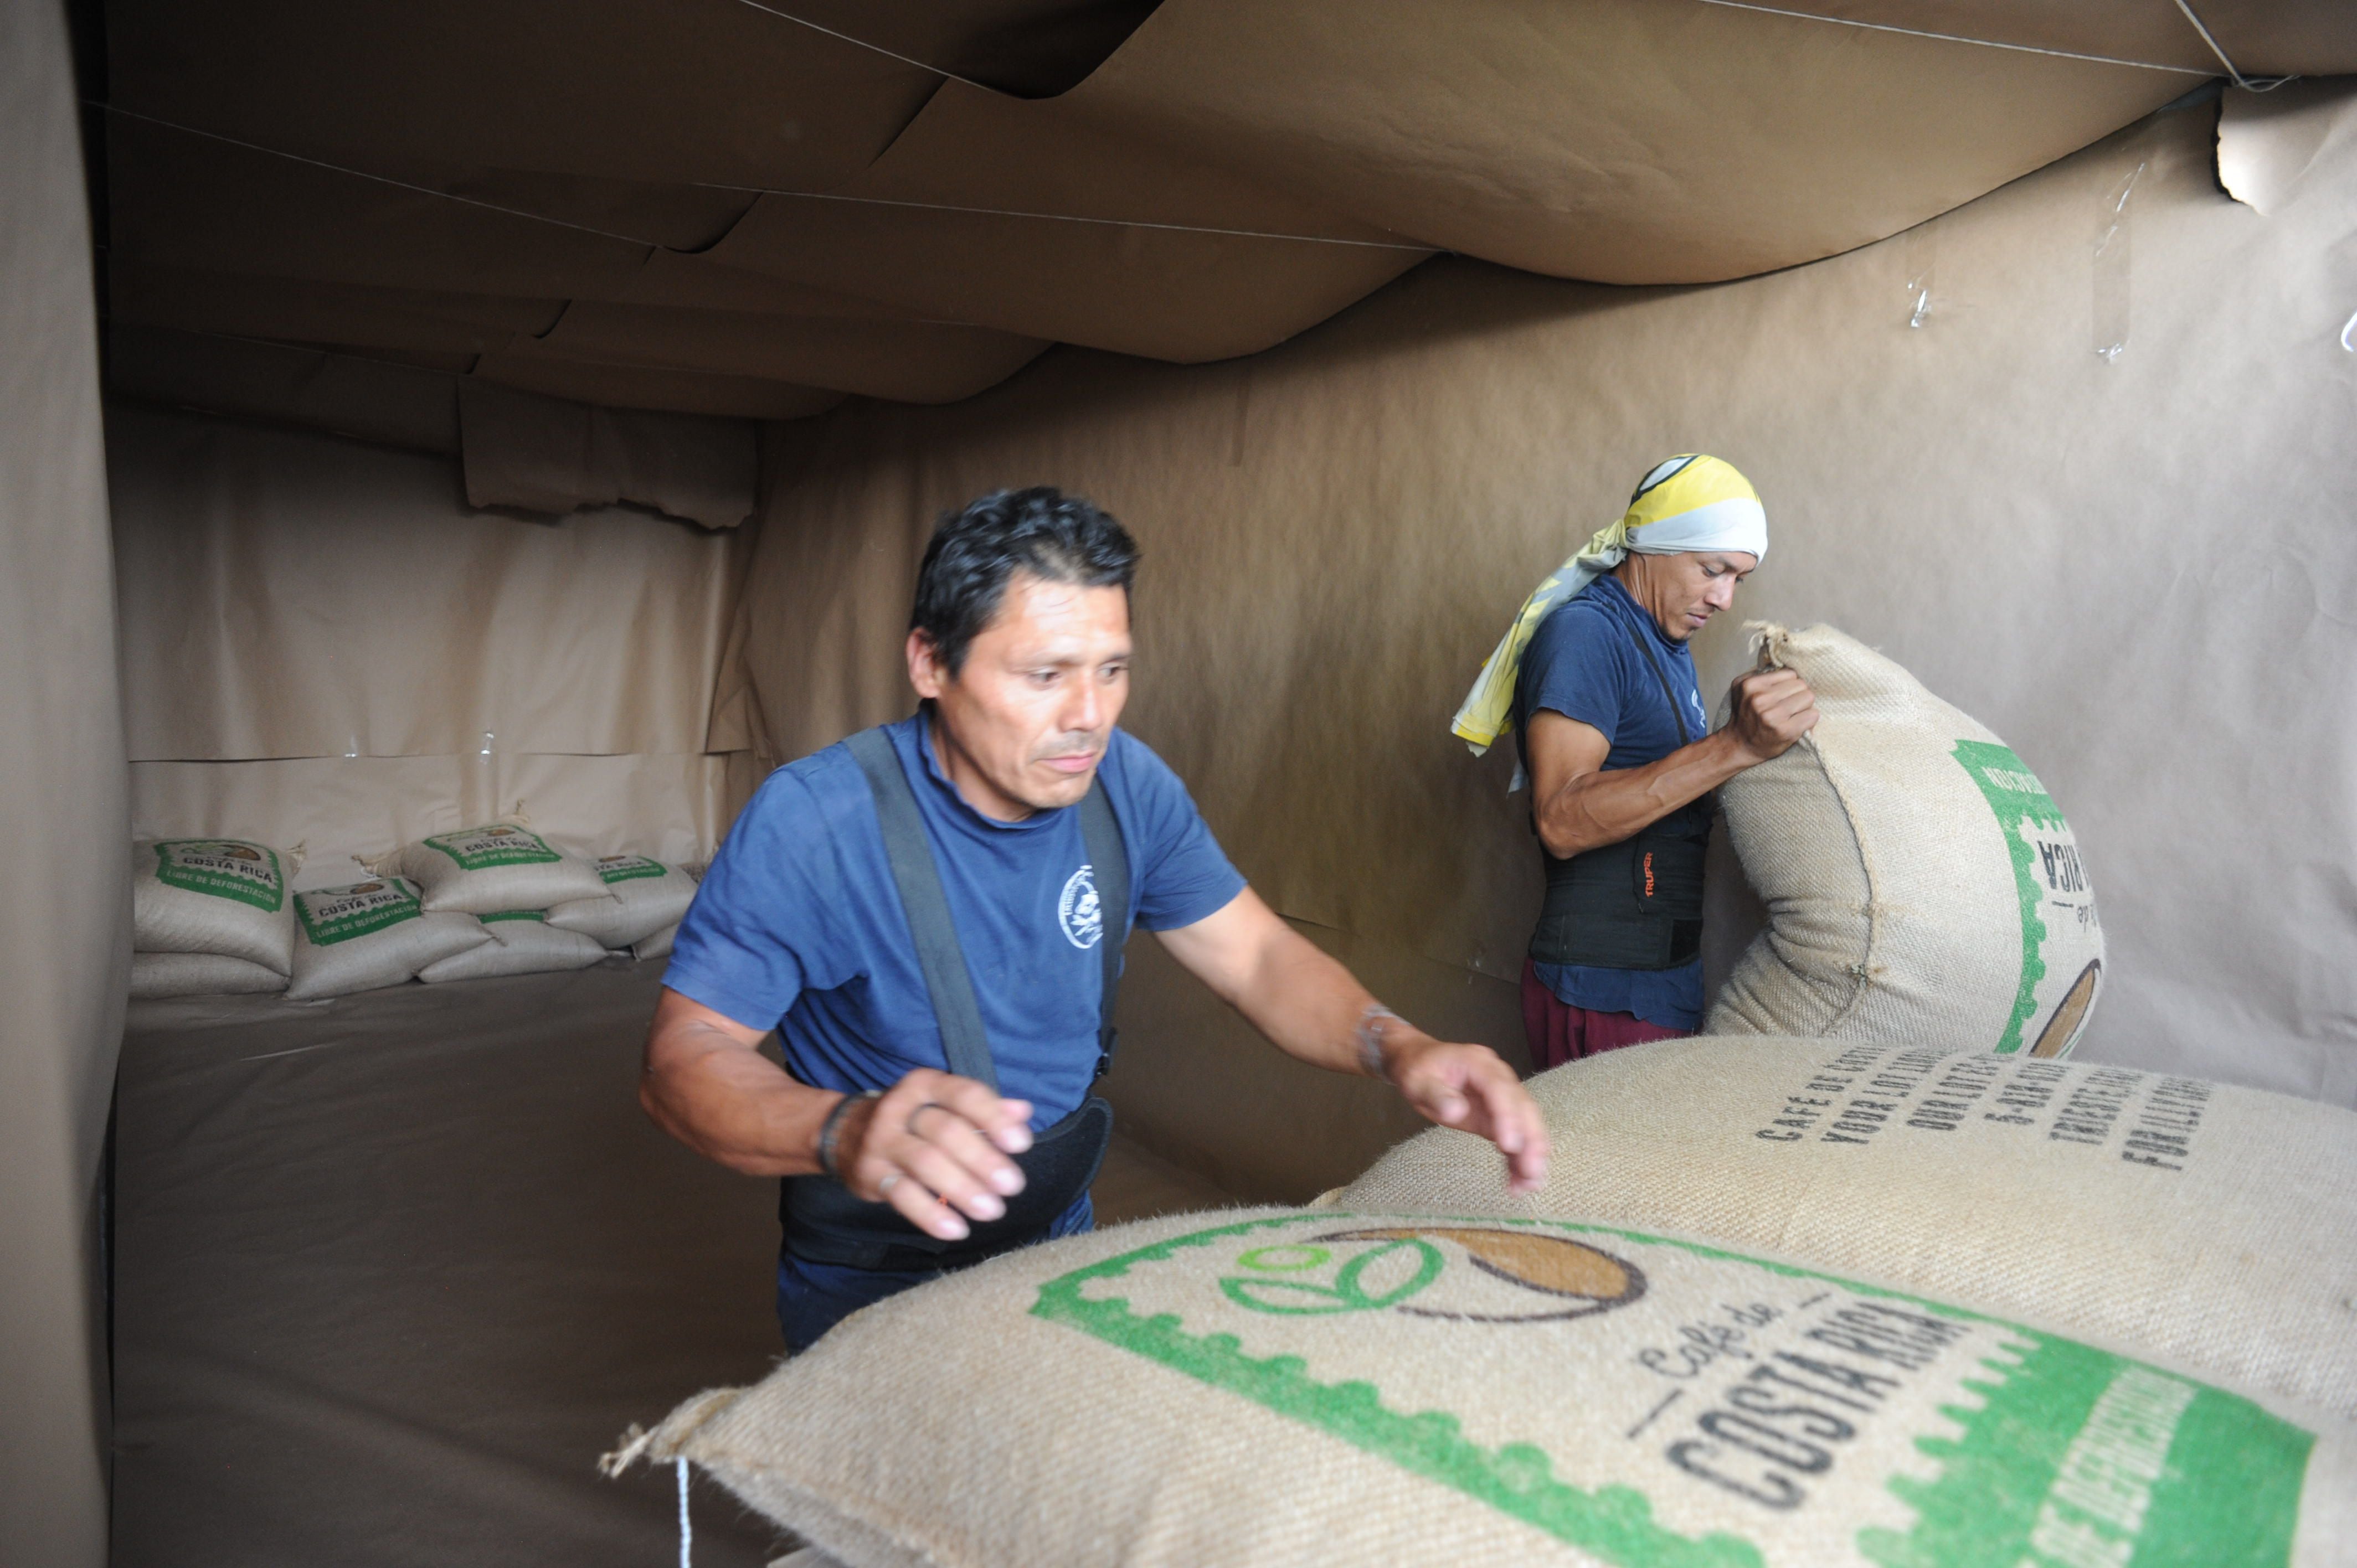 Costa Rica concretó la primera exportación de café, declarada libre de deforestación, en marzo pasado, como parte de un proyecto piloto. Foto: Jorge Navarro